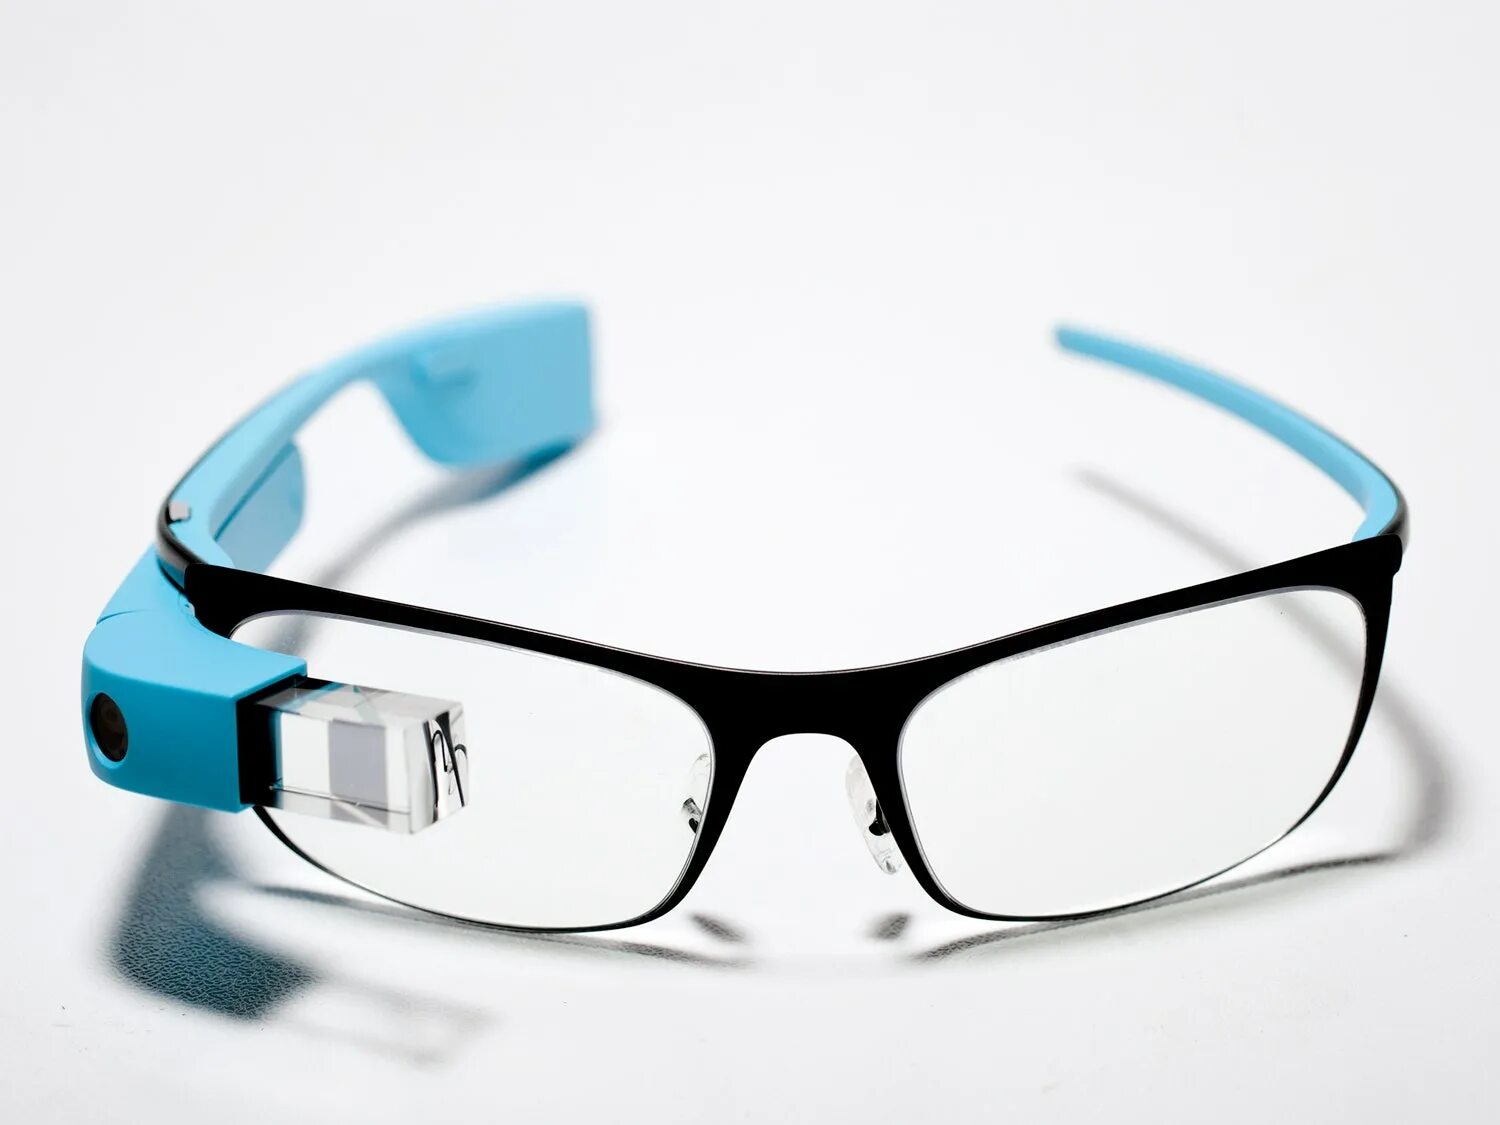 Купить очки в аптеке. Смарт Гласс очки. Умные очки Google Glass. Ar-очки Google Glass 2014. Очки дополненной реальности Google Glass 3.0.